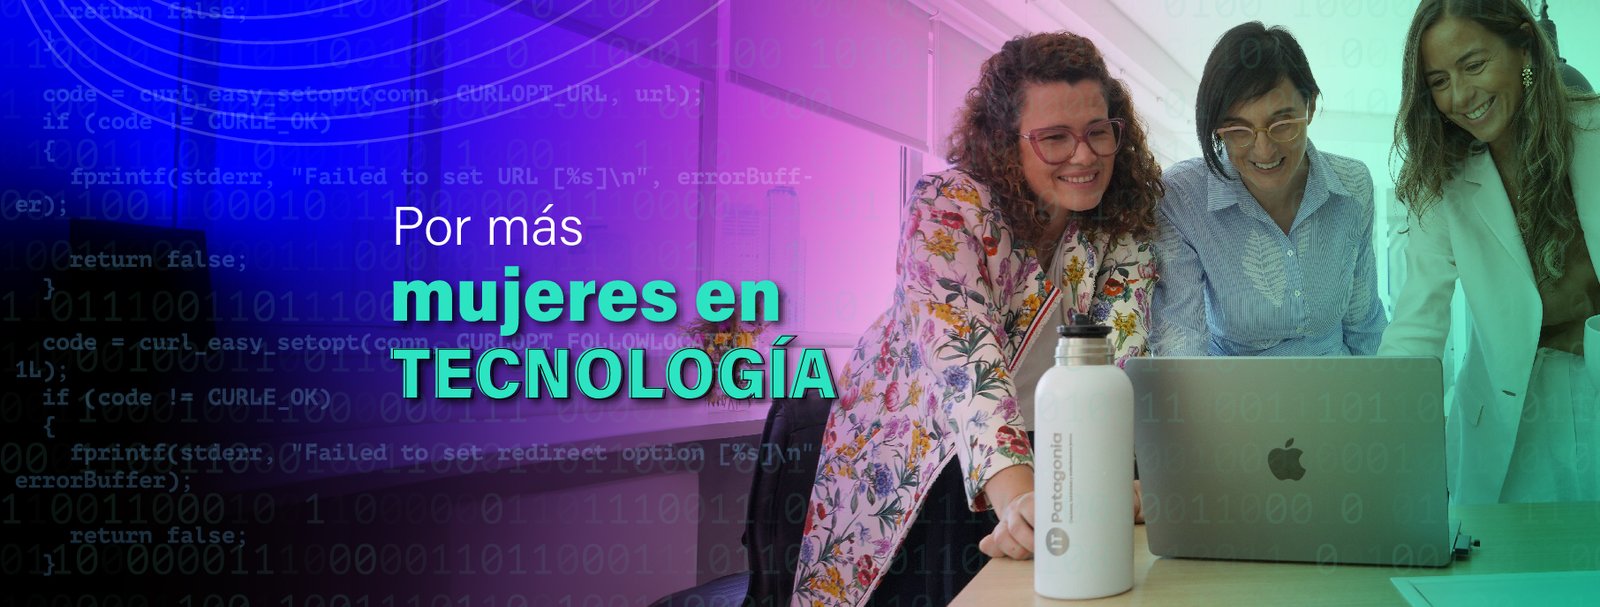 Mujeres en tecnología: historias inspiradoras-IT Patagonia